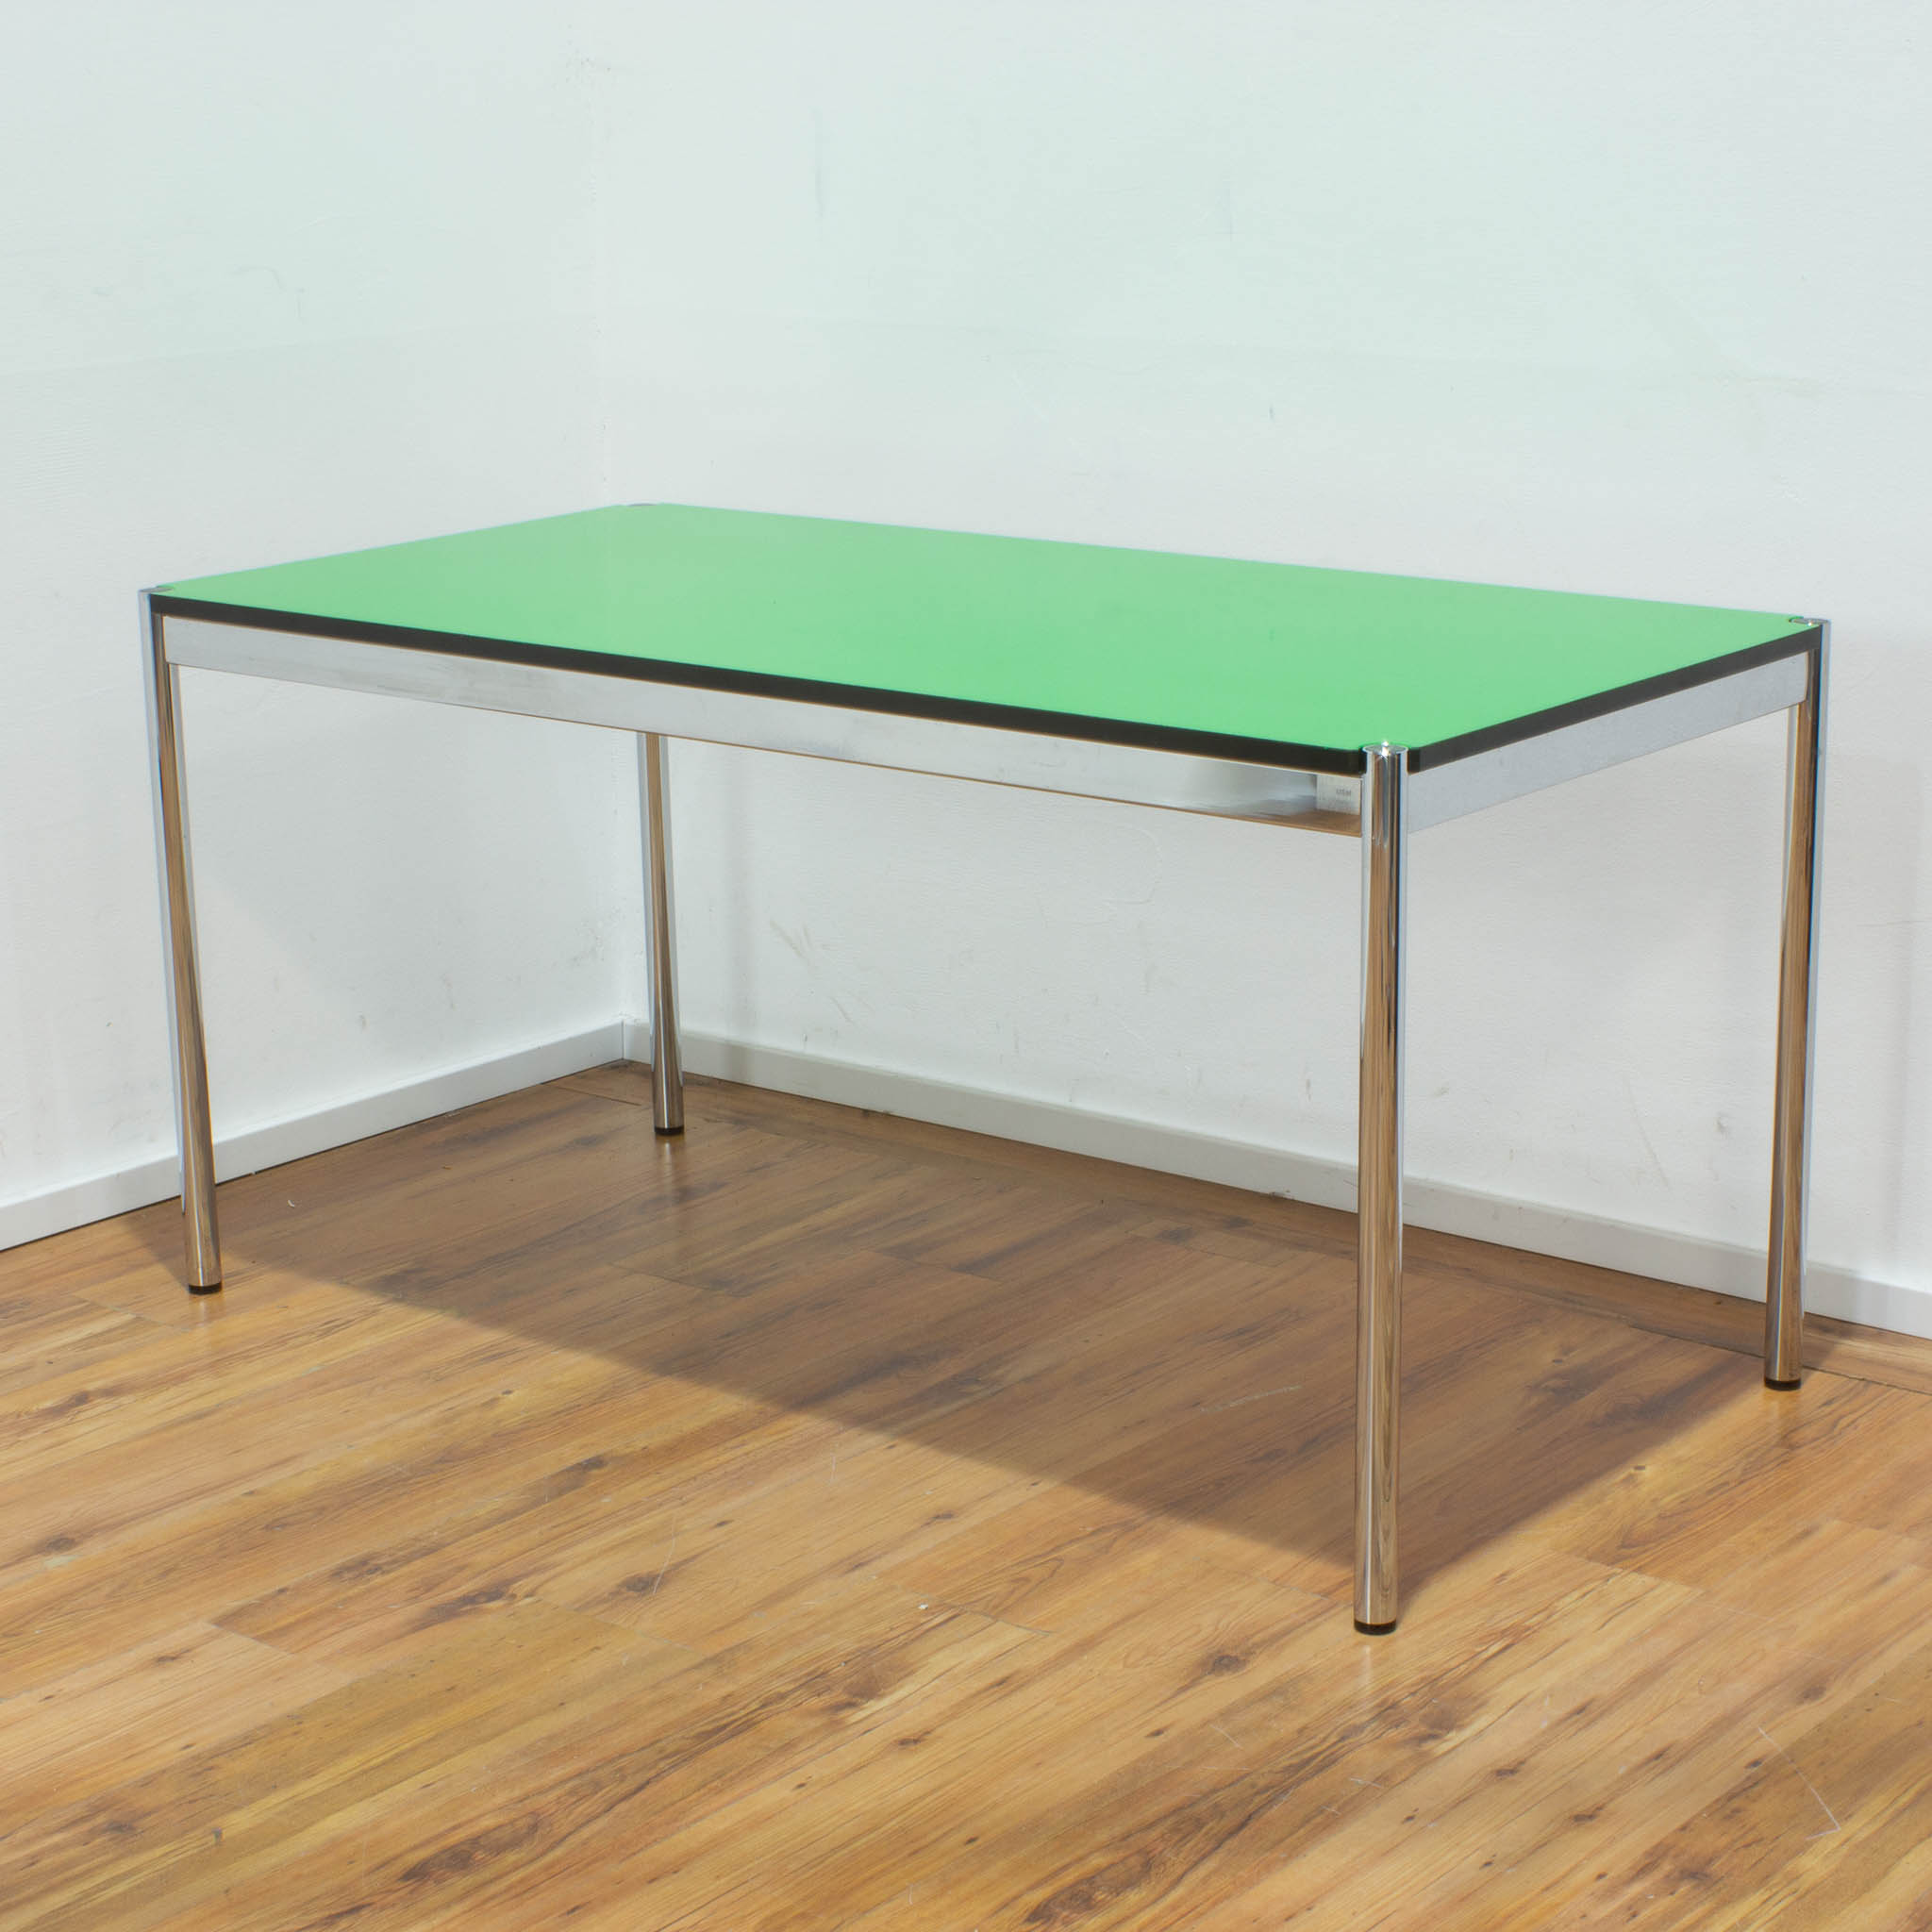 USM Haller Schreibtisch - Tischplatte grün mit schwarzer Umleimung - gebraucht - 150 x 75 cm